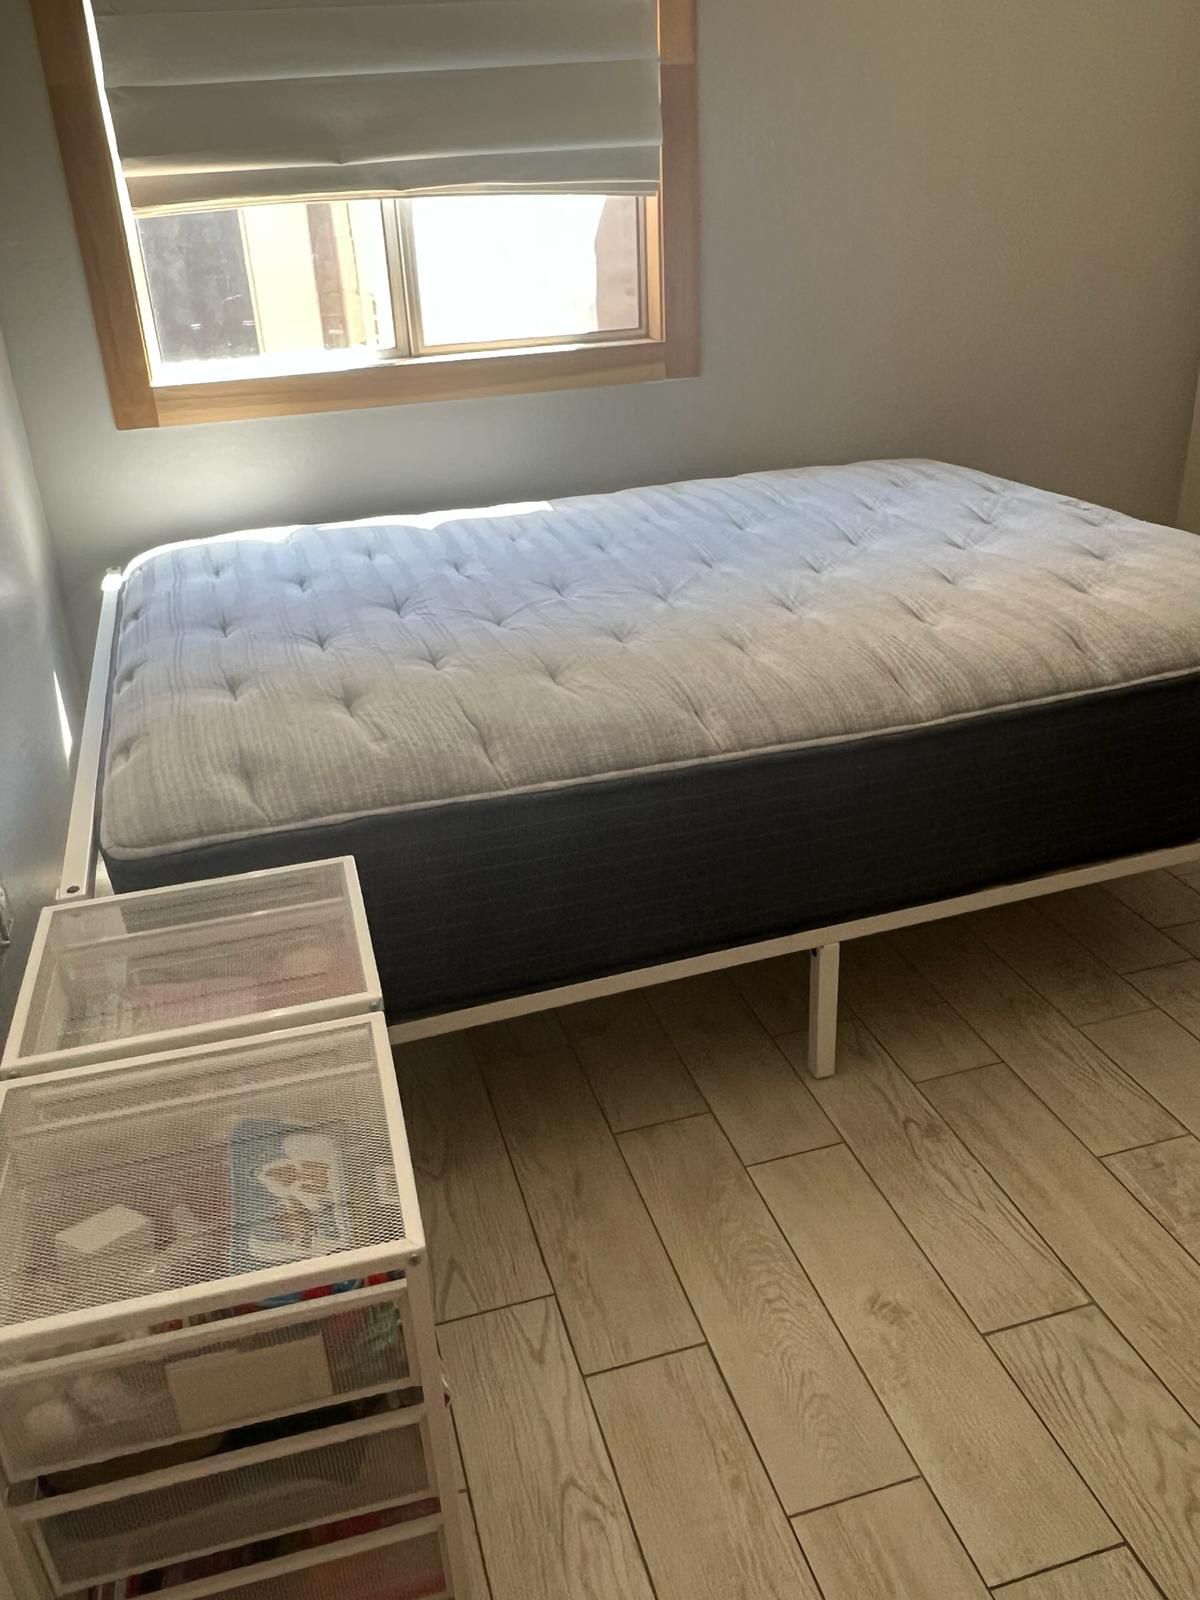 Queen Bedroom Furniture Set - IKEA 